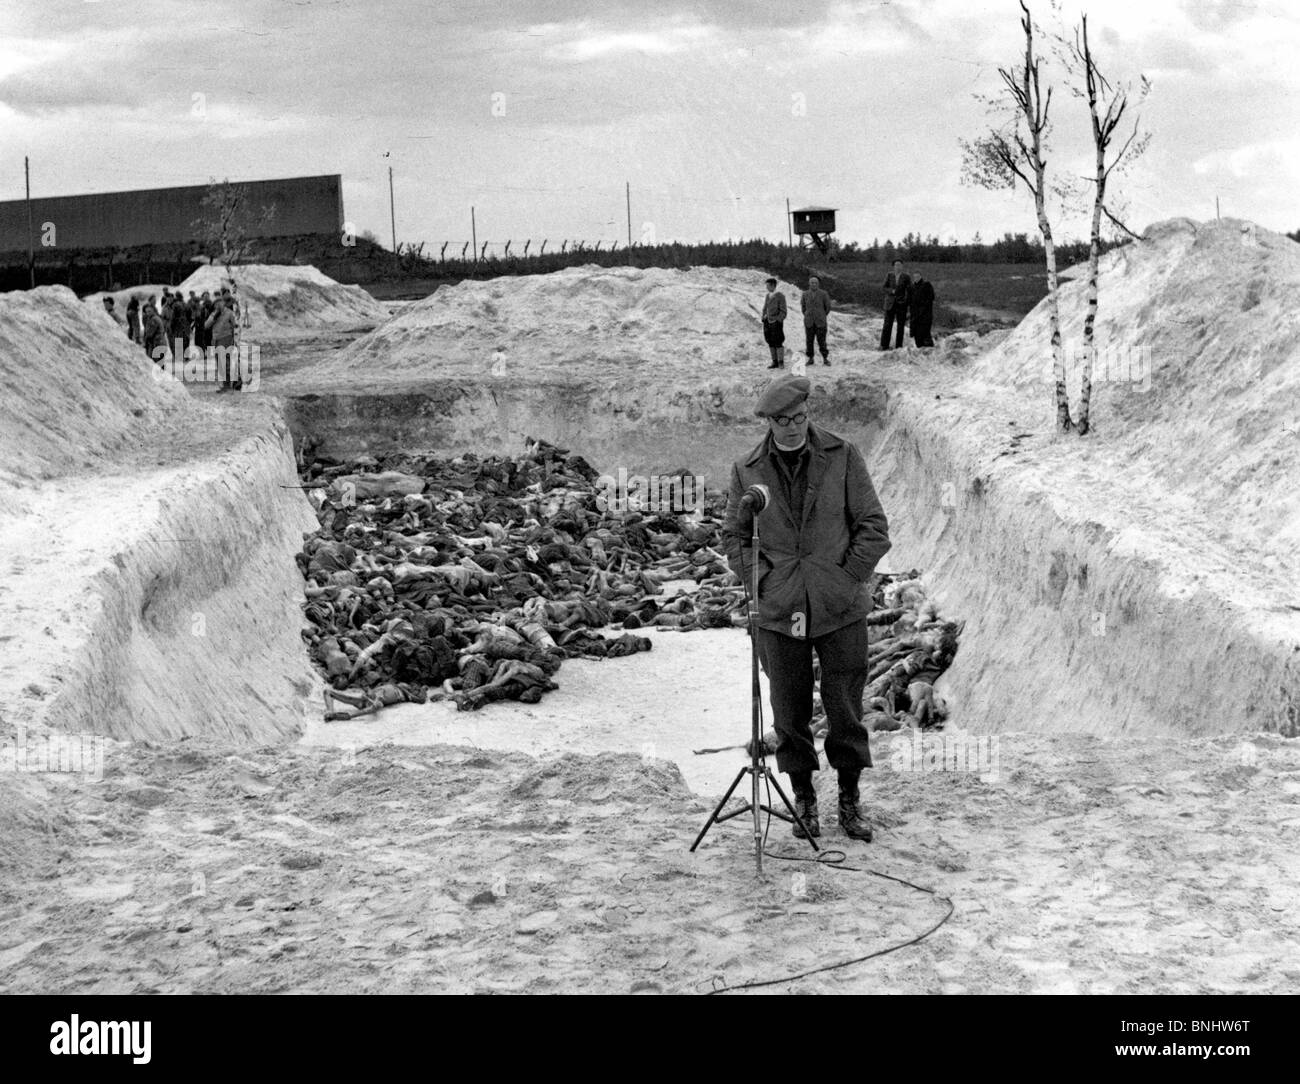 La Seconde Guerre mondiale, camp de concentration de Bergen-Belsen Holocauste Allemagne Avril 1945 Historique Historique L'histoire des Nazis prisonniers prisonniers Banque D'Images